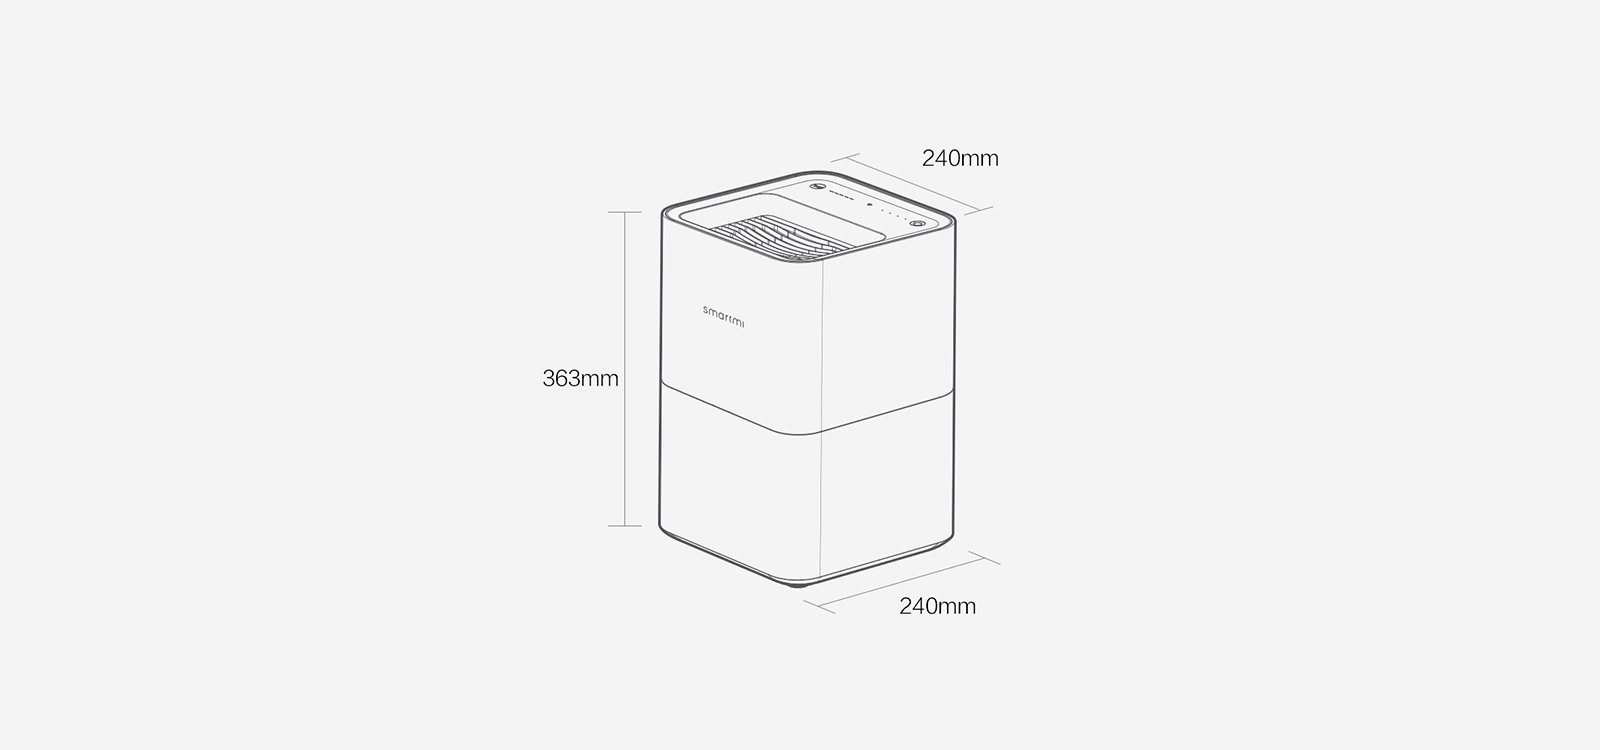 Увлажнитель Воздуха Xiaomi Skv414